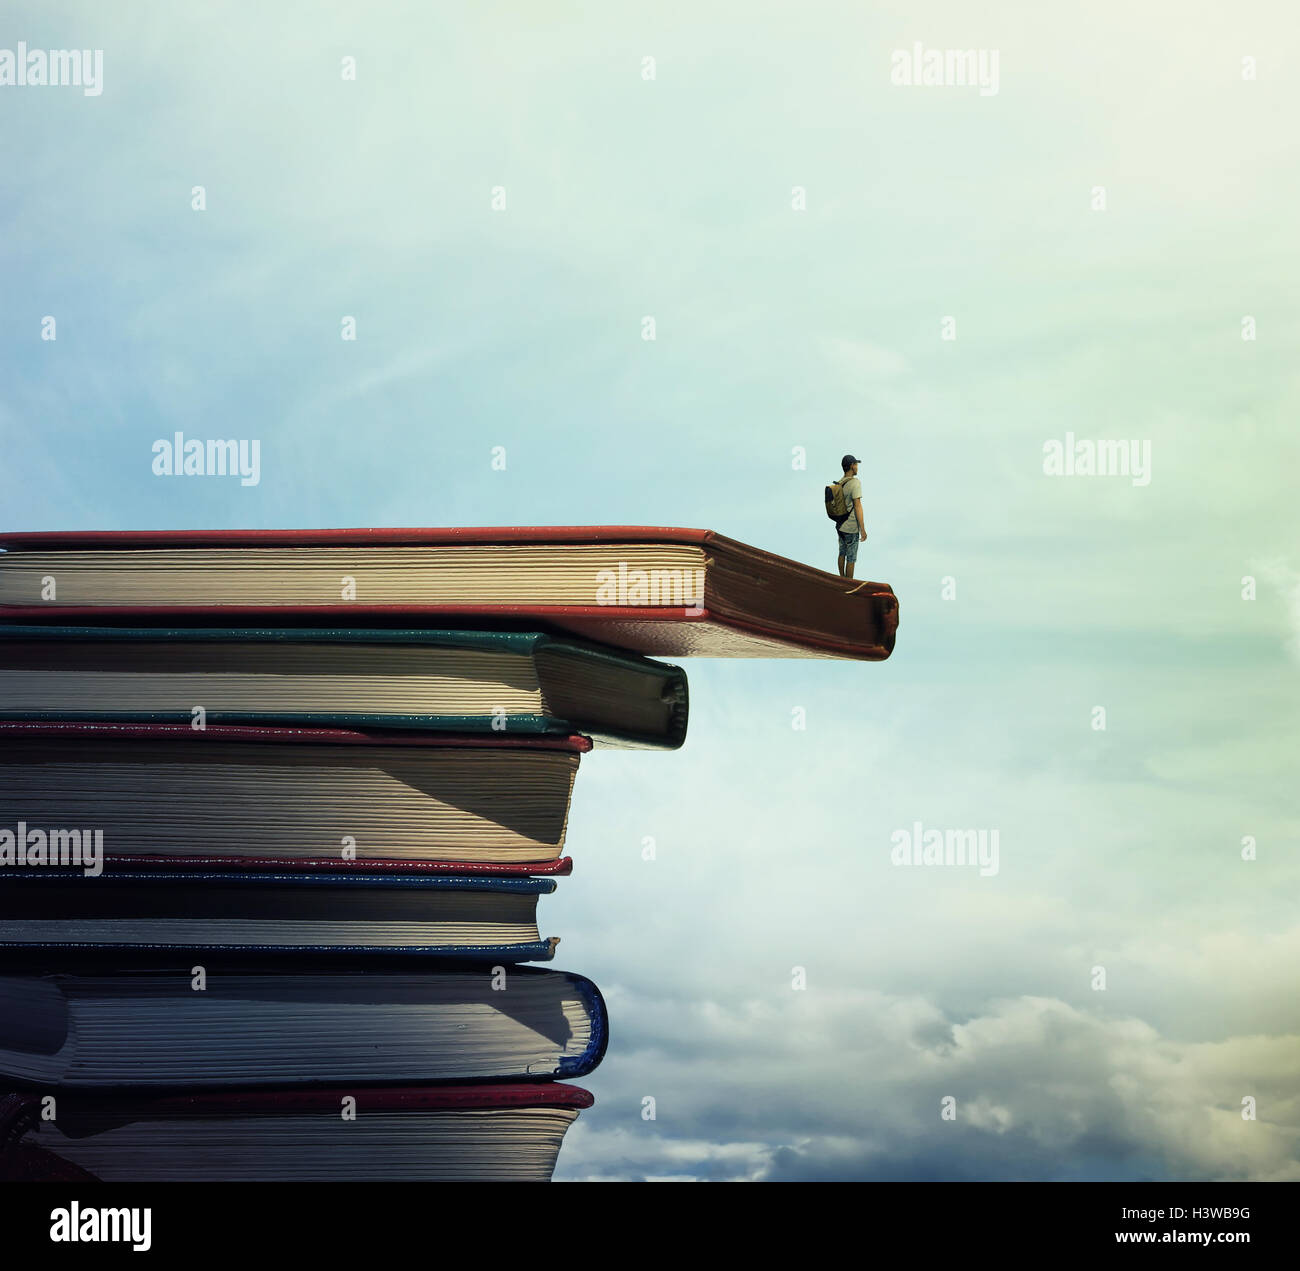 Jeune garçon avec un sac sur son dos se tenir sur une pile de livres à la mesure à l'horizon. À la recherche d'apprendre concept. Banque D'Images